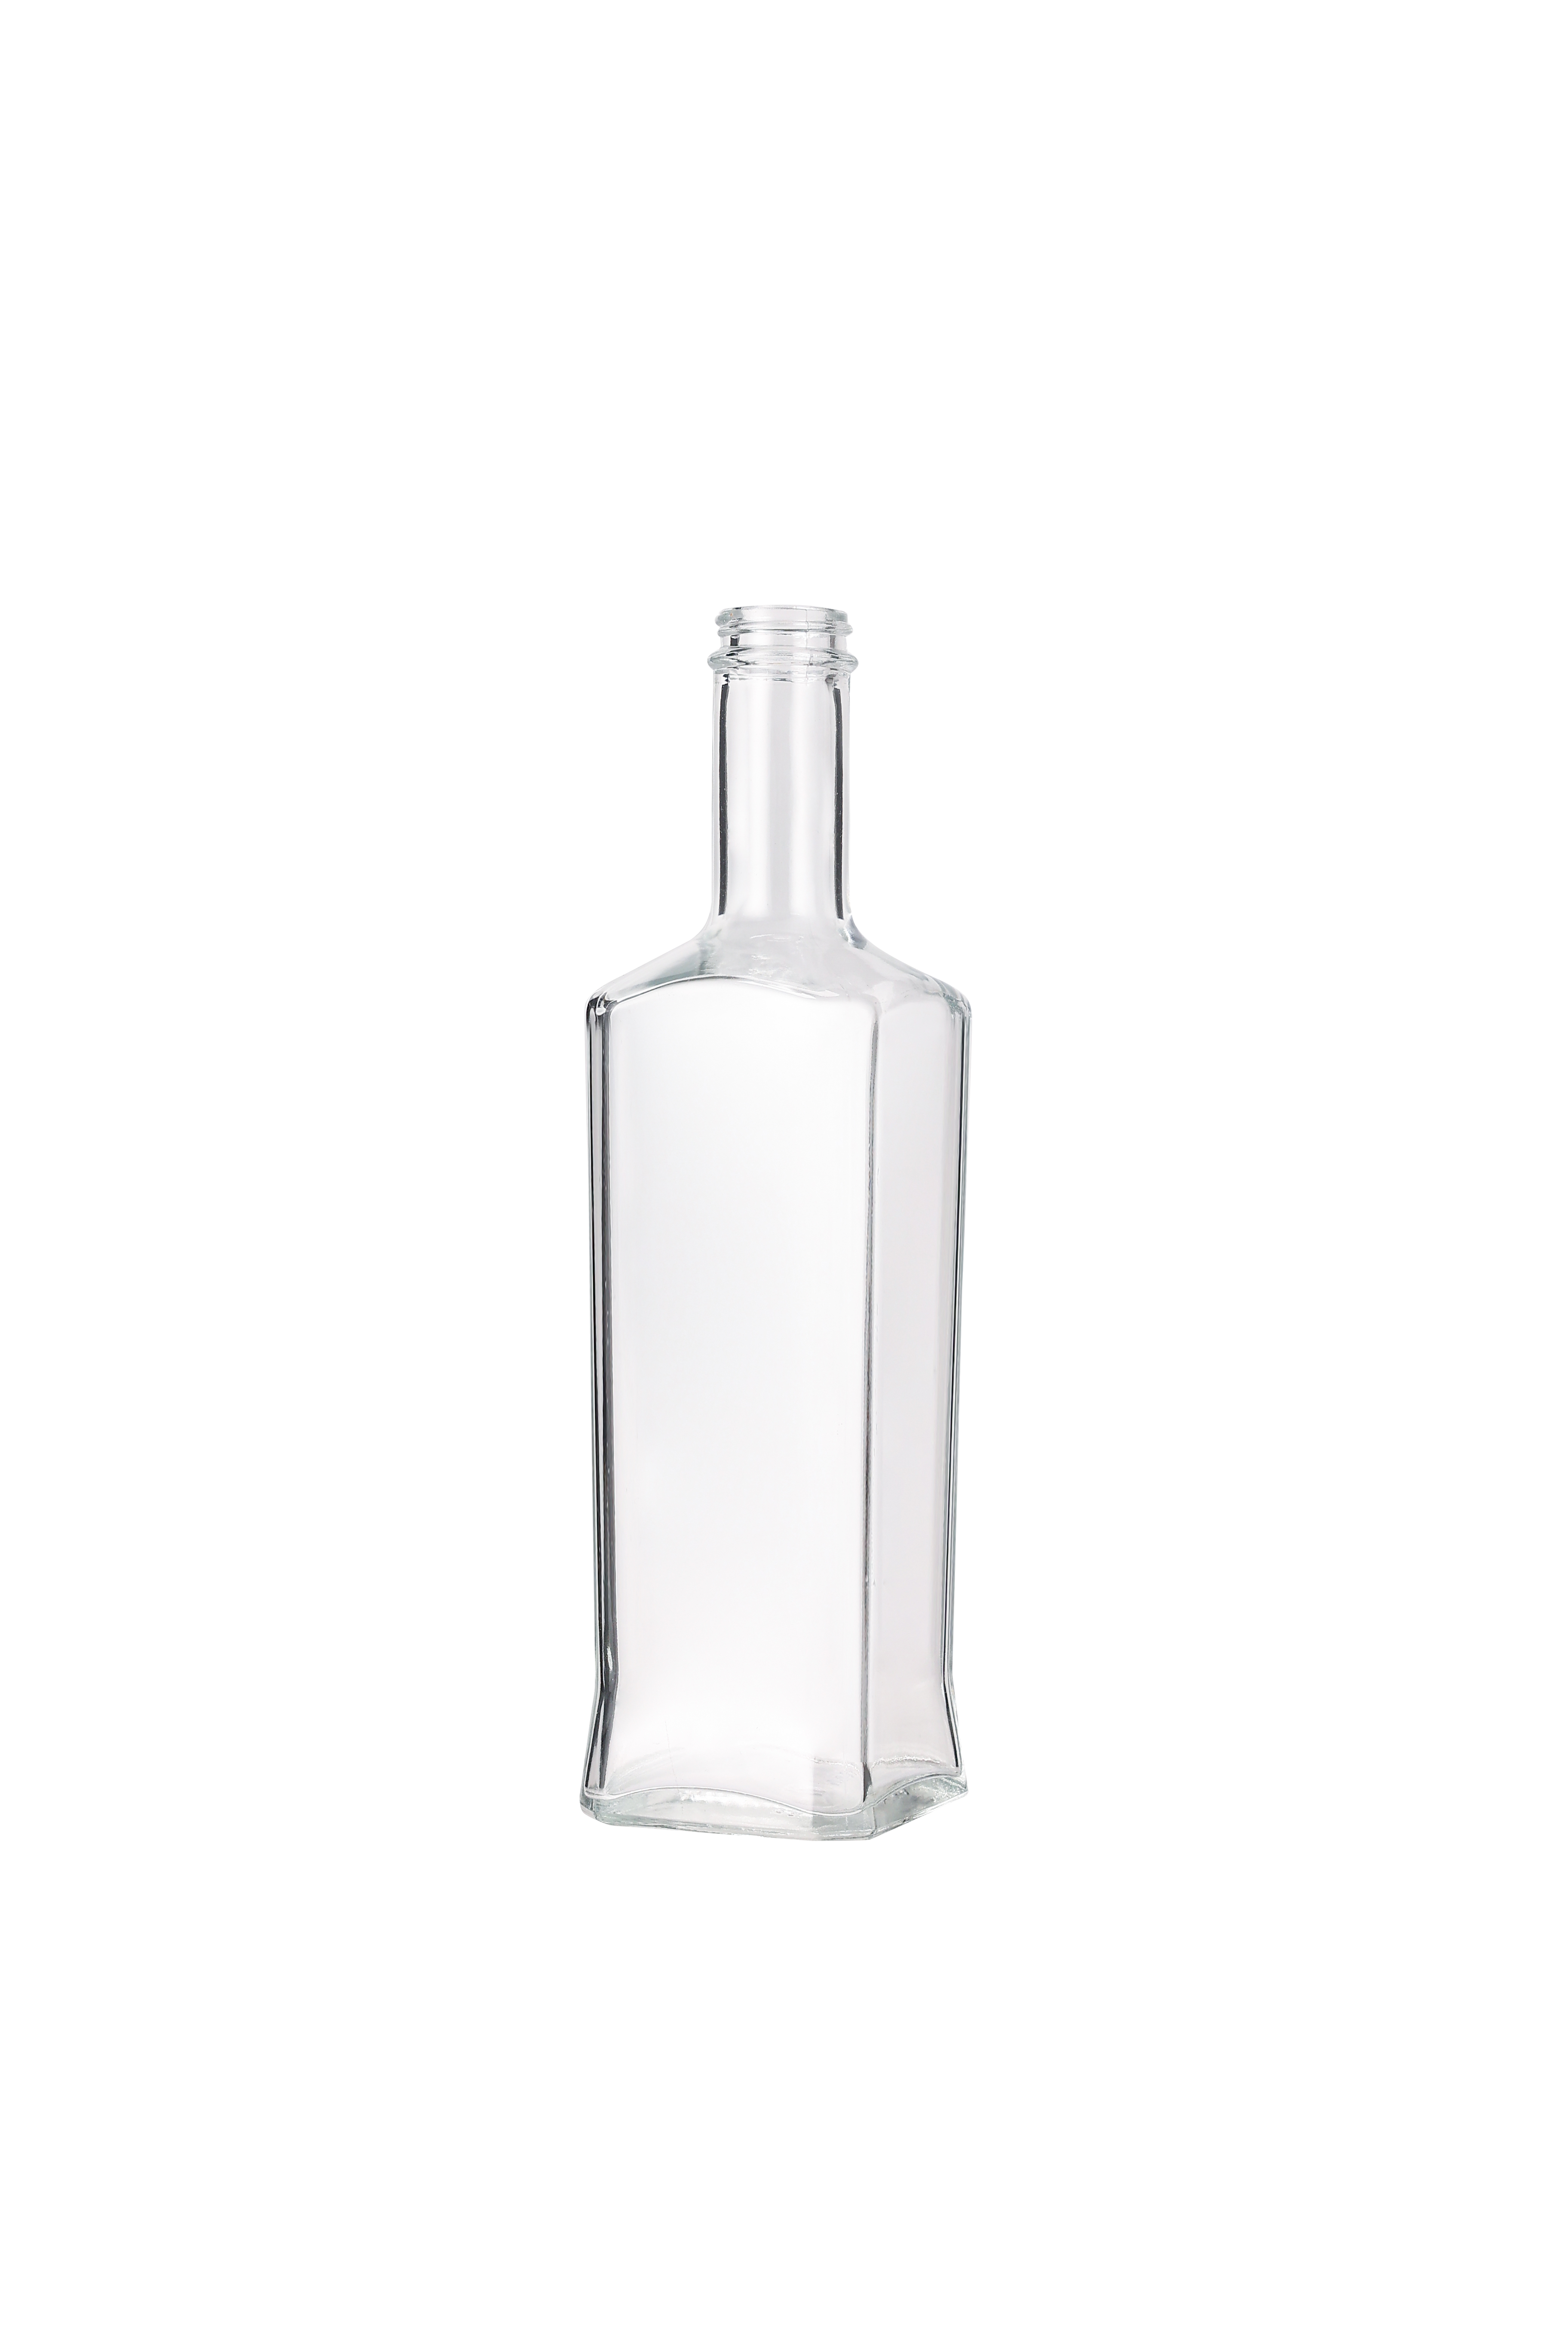 Whisky Glass Bottles Custom Liquor 750ml Vodka Spirit Glass Bottles 500ml Wholesale